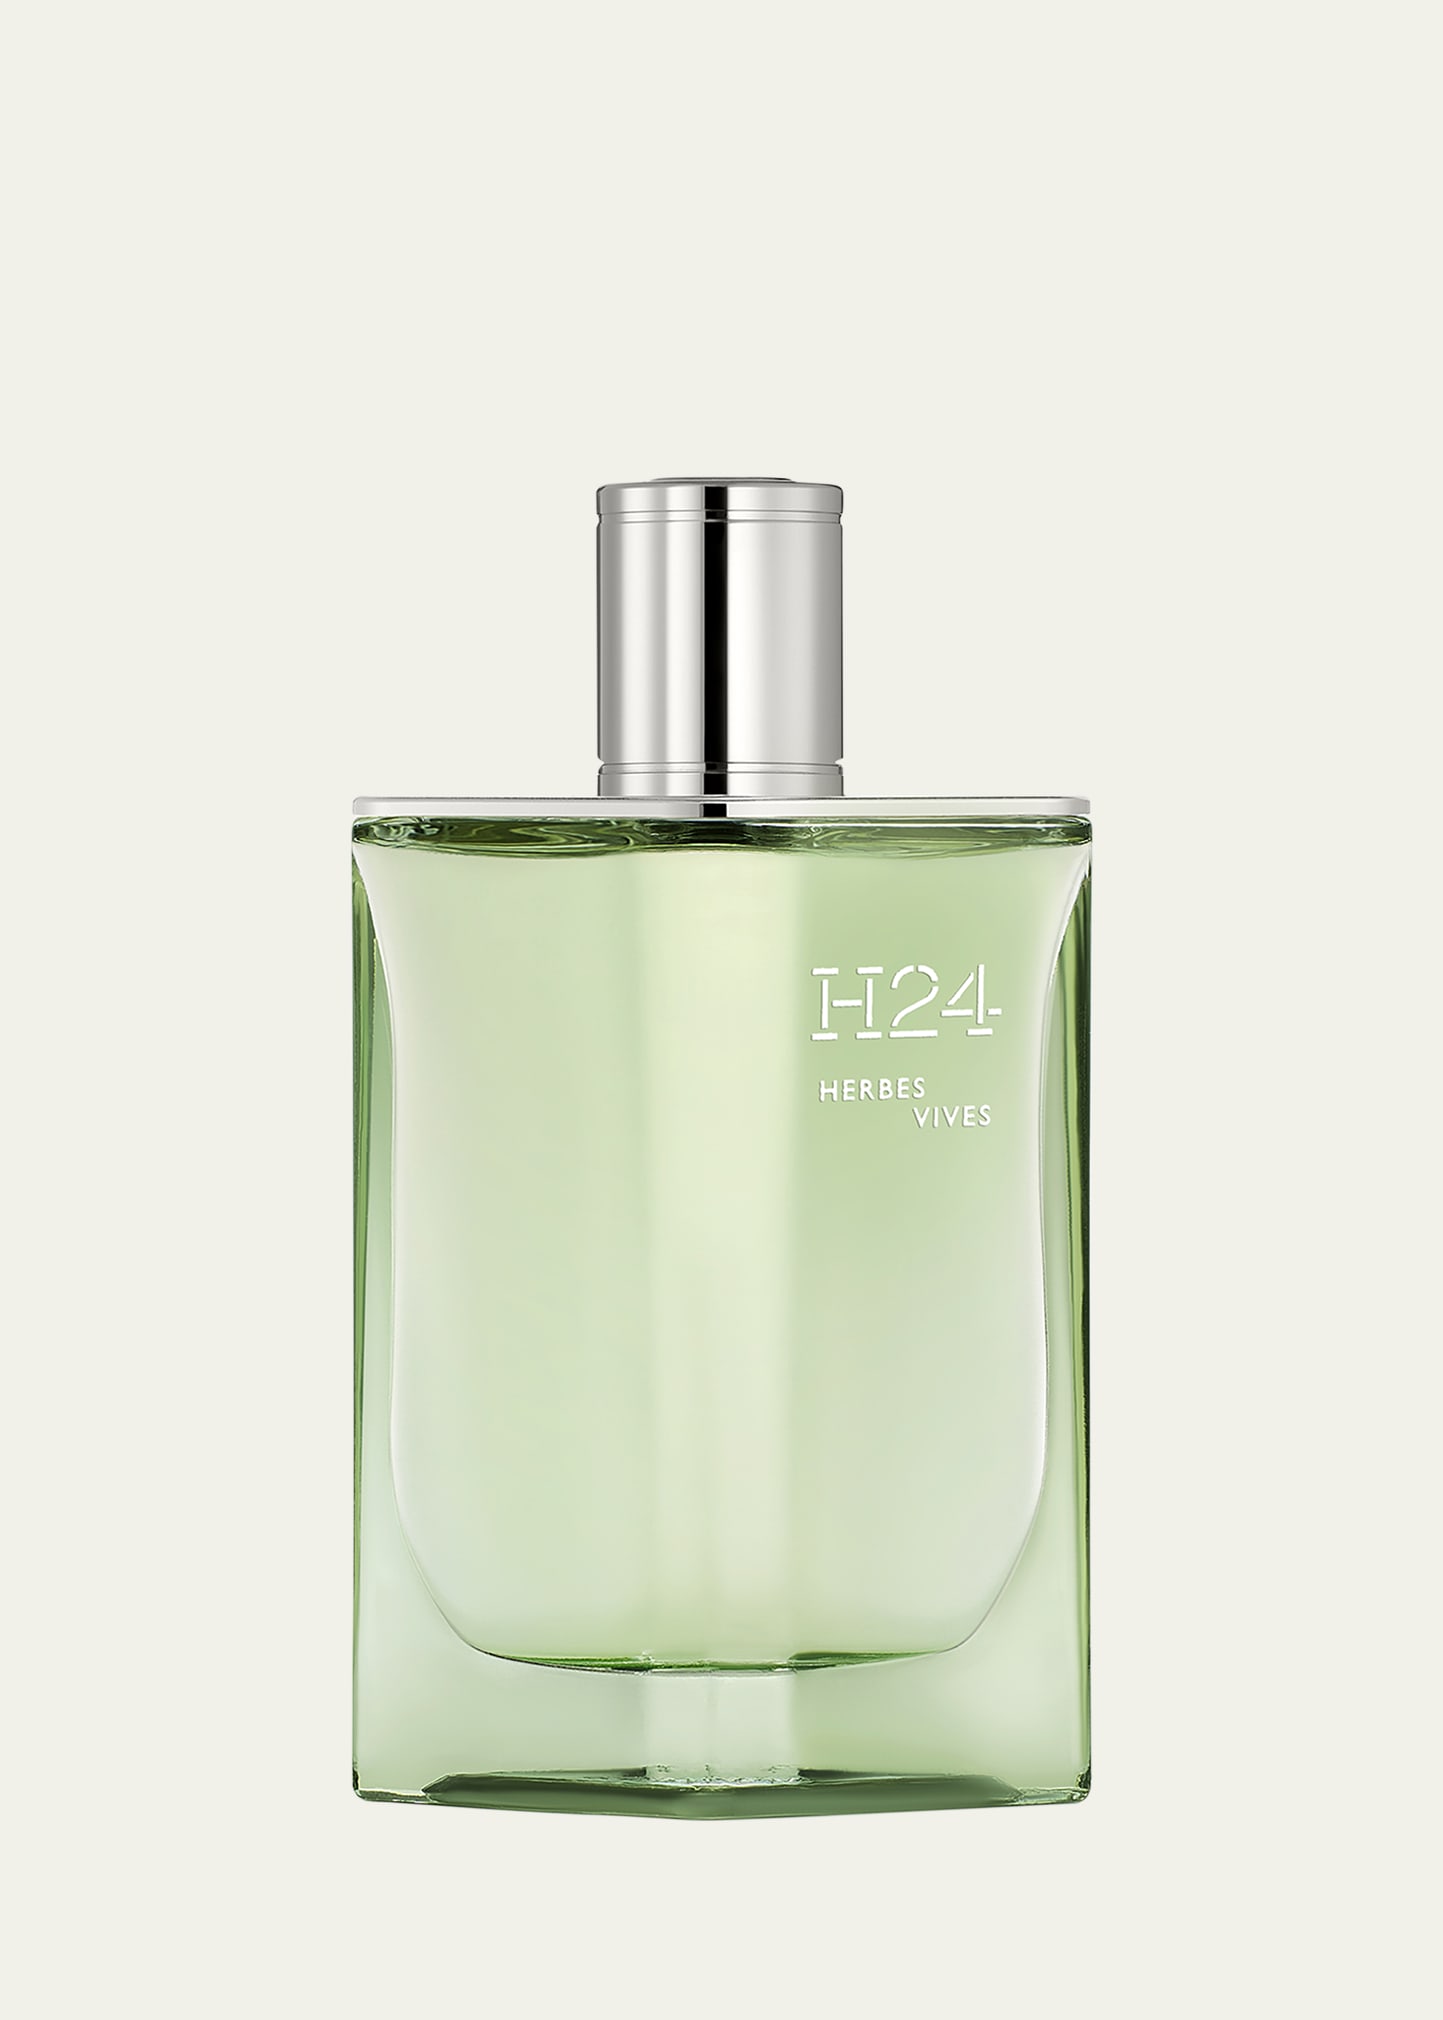 Hermès H24 Herbes Vives Eau de Parfum, 3.3 oz.